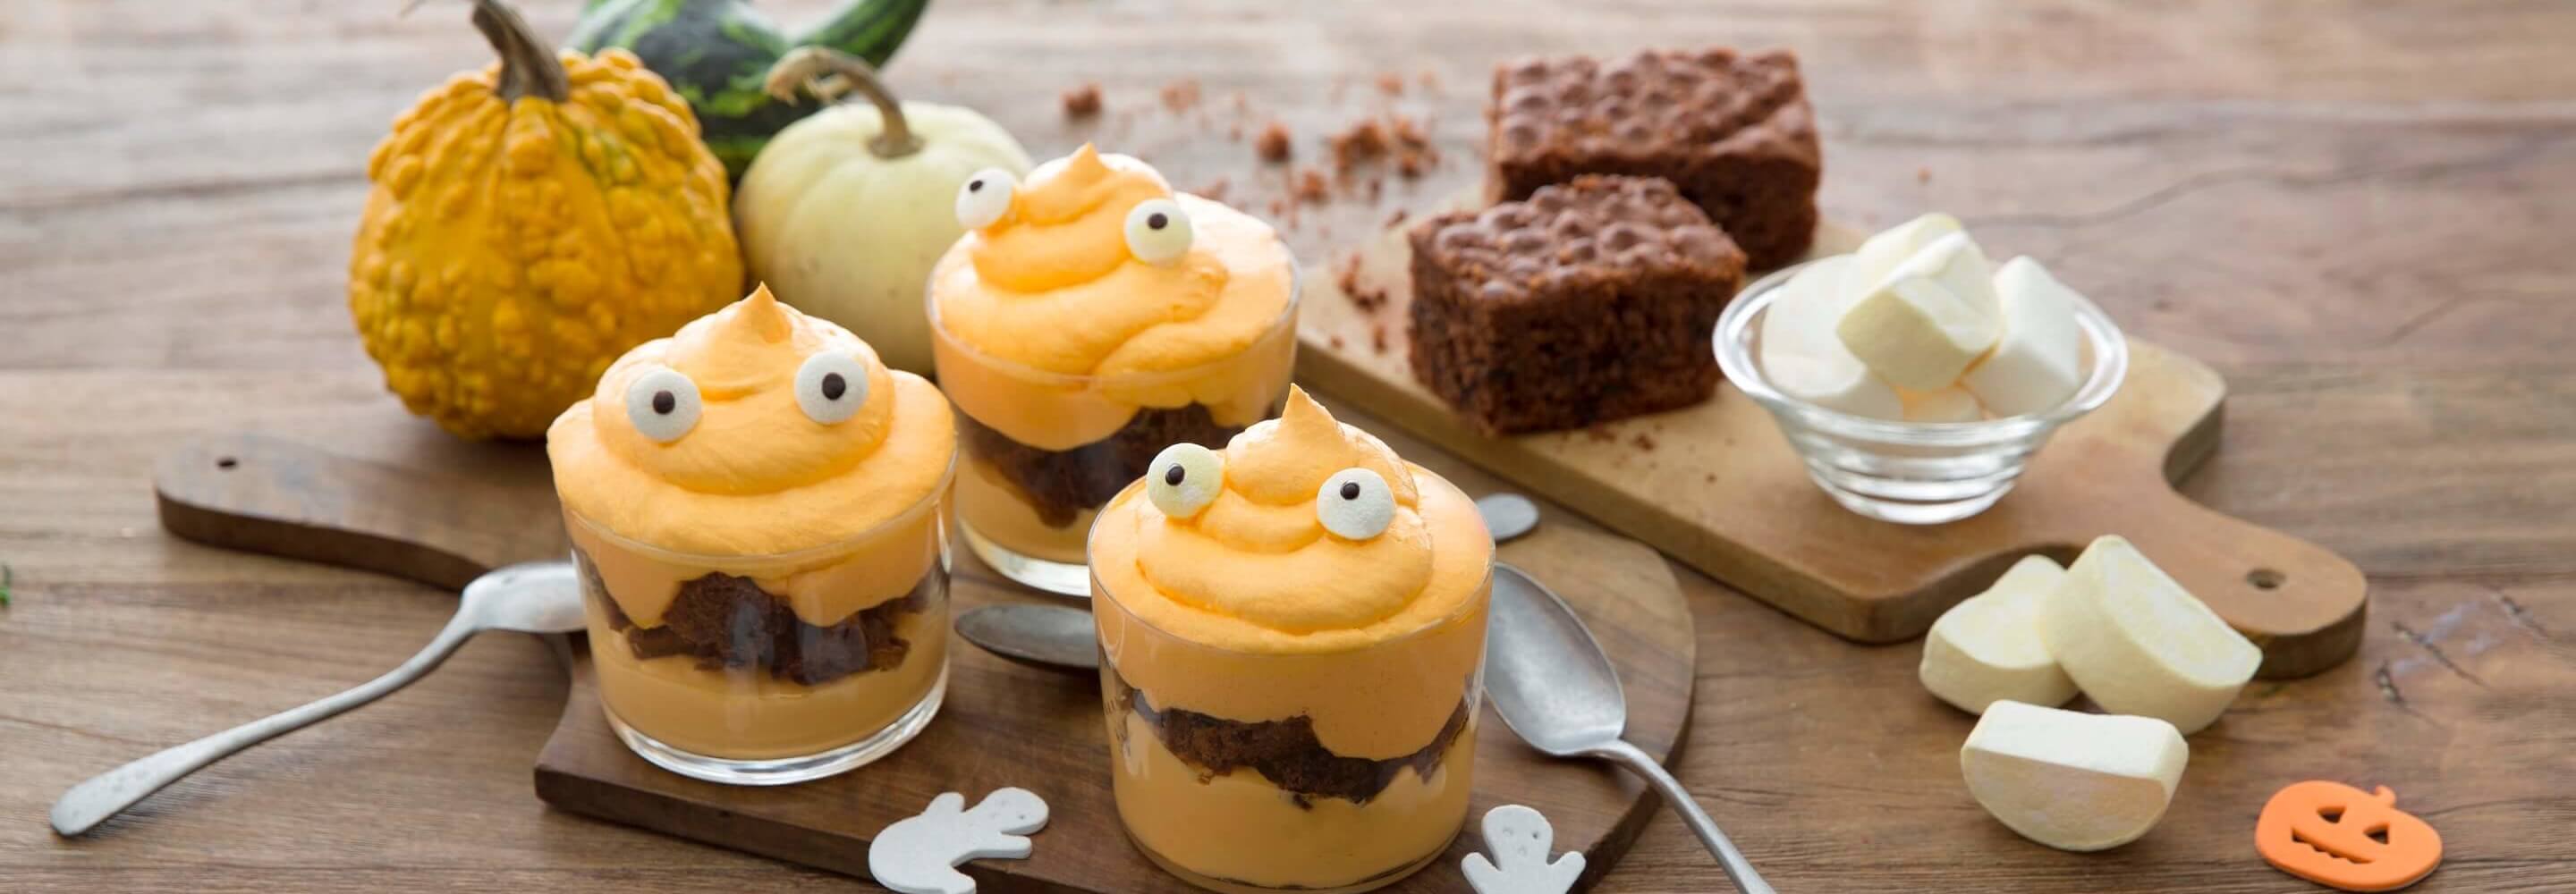 Monstres en pot (crème de potiron et sponge cake au chocolat)